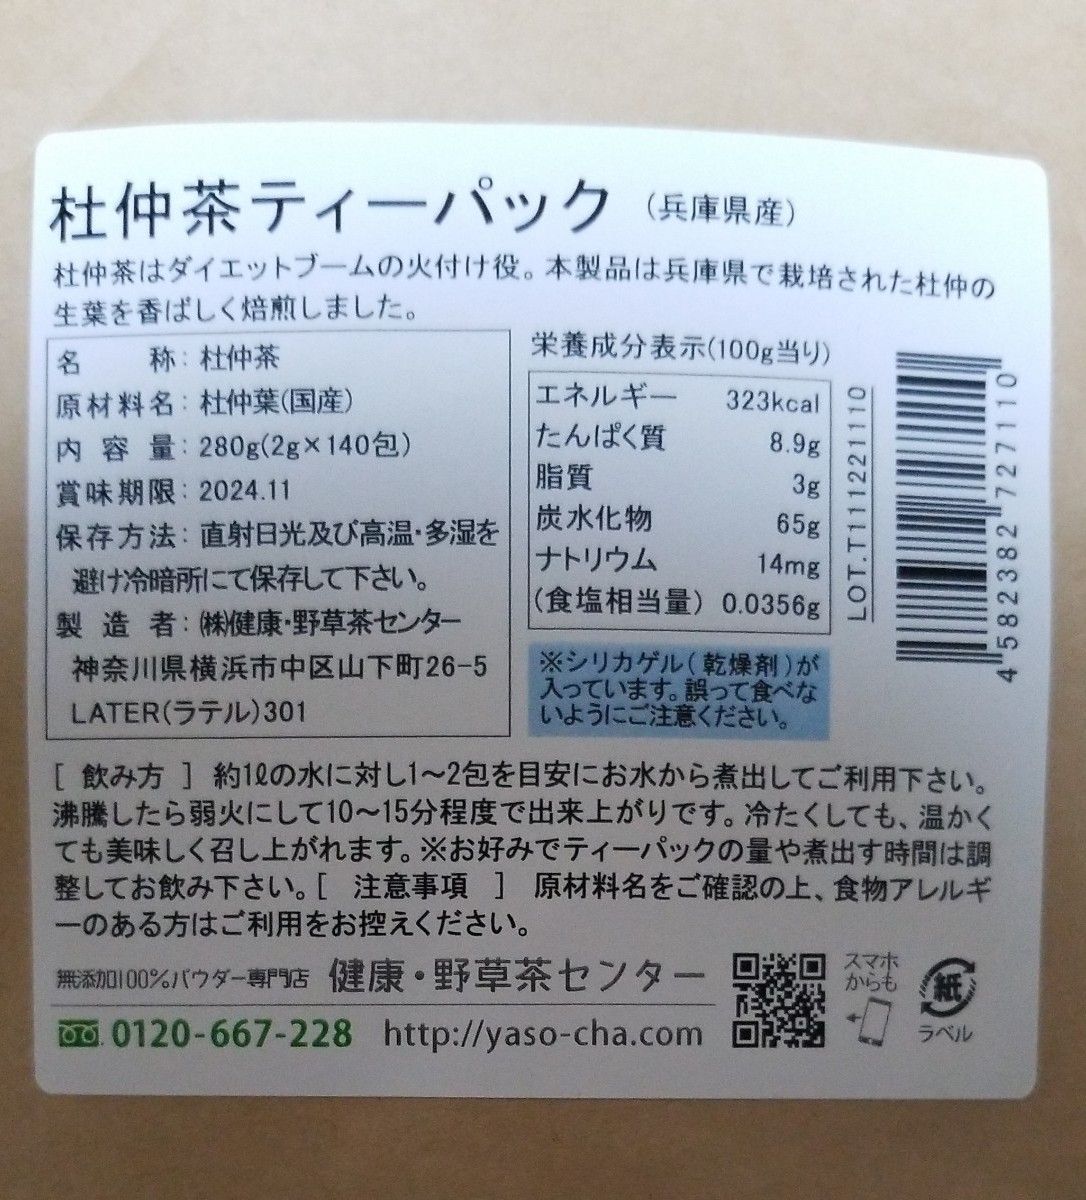 杜仲茶(兵庫県産)【2g×140包】ティーパック 